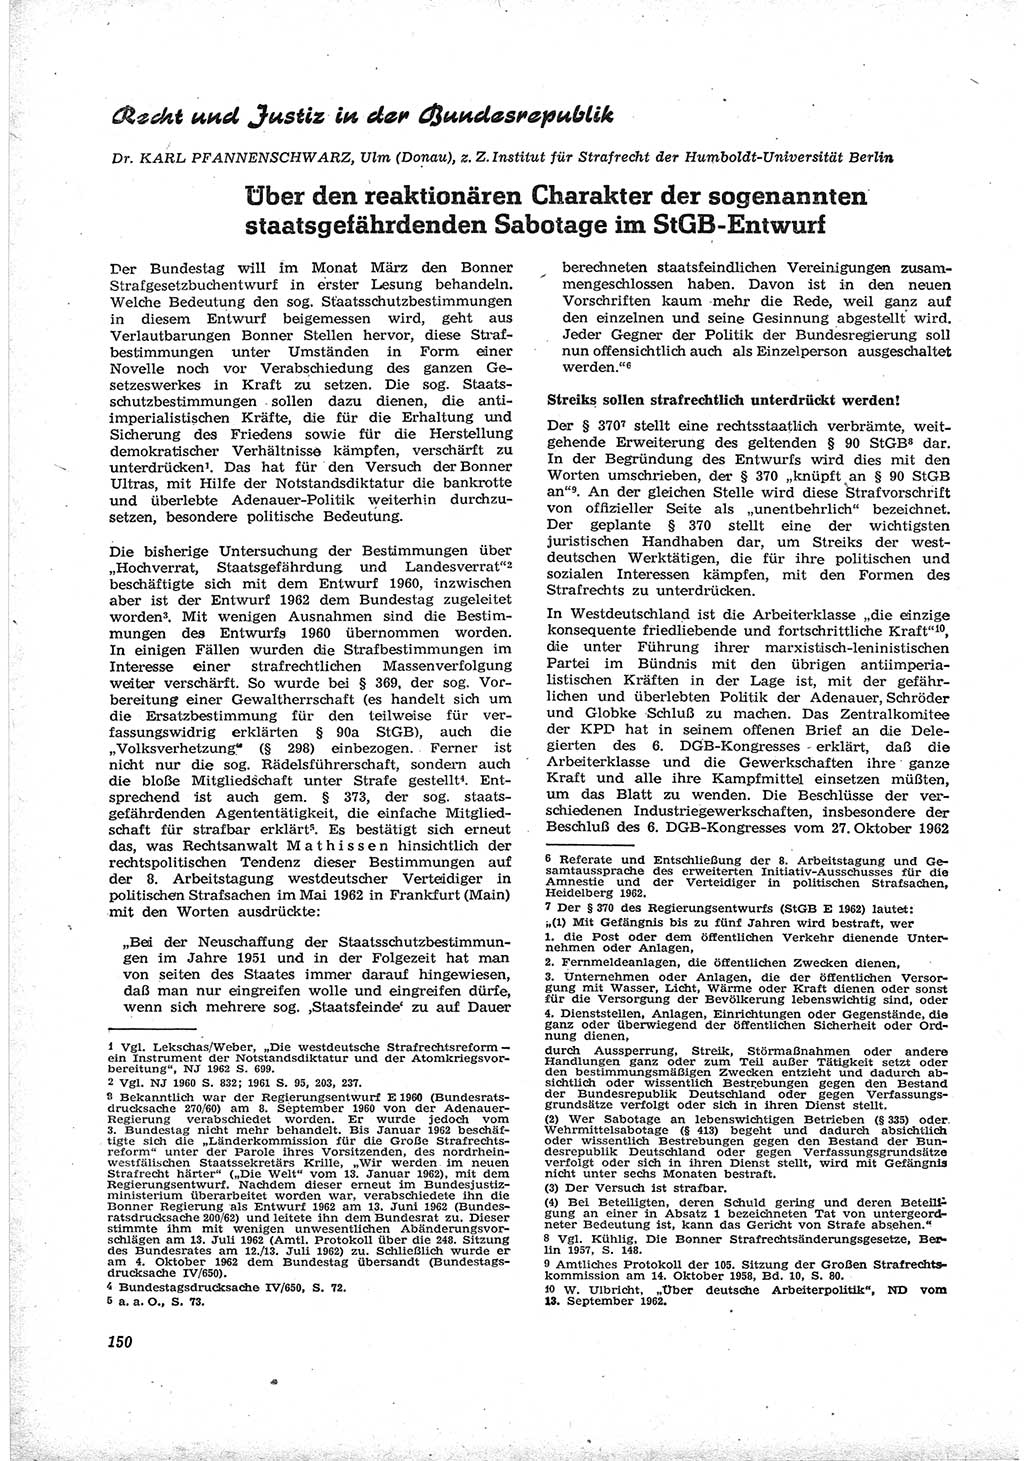 Neue Justiz (NJ), Zeitschrift für Recht und Rechtswissenschaft [Deutsche Demokratische Republik (DDR)], 17. Jahrgang 1963, Seite 150 (NJ DDR 1963, S. 150)